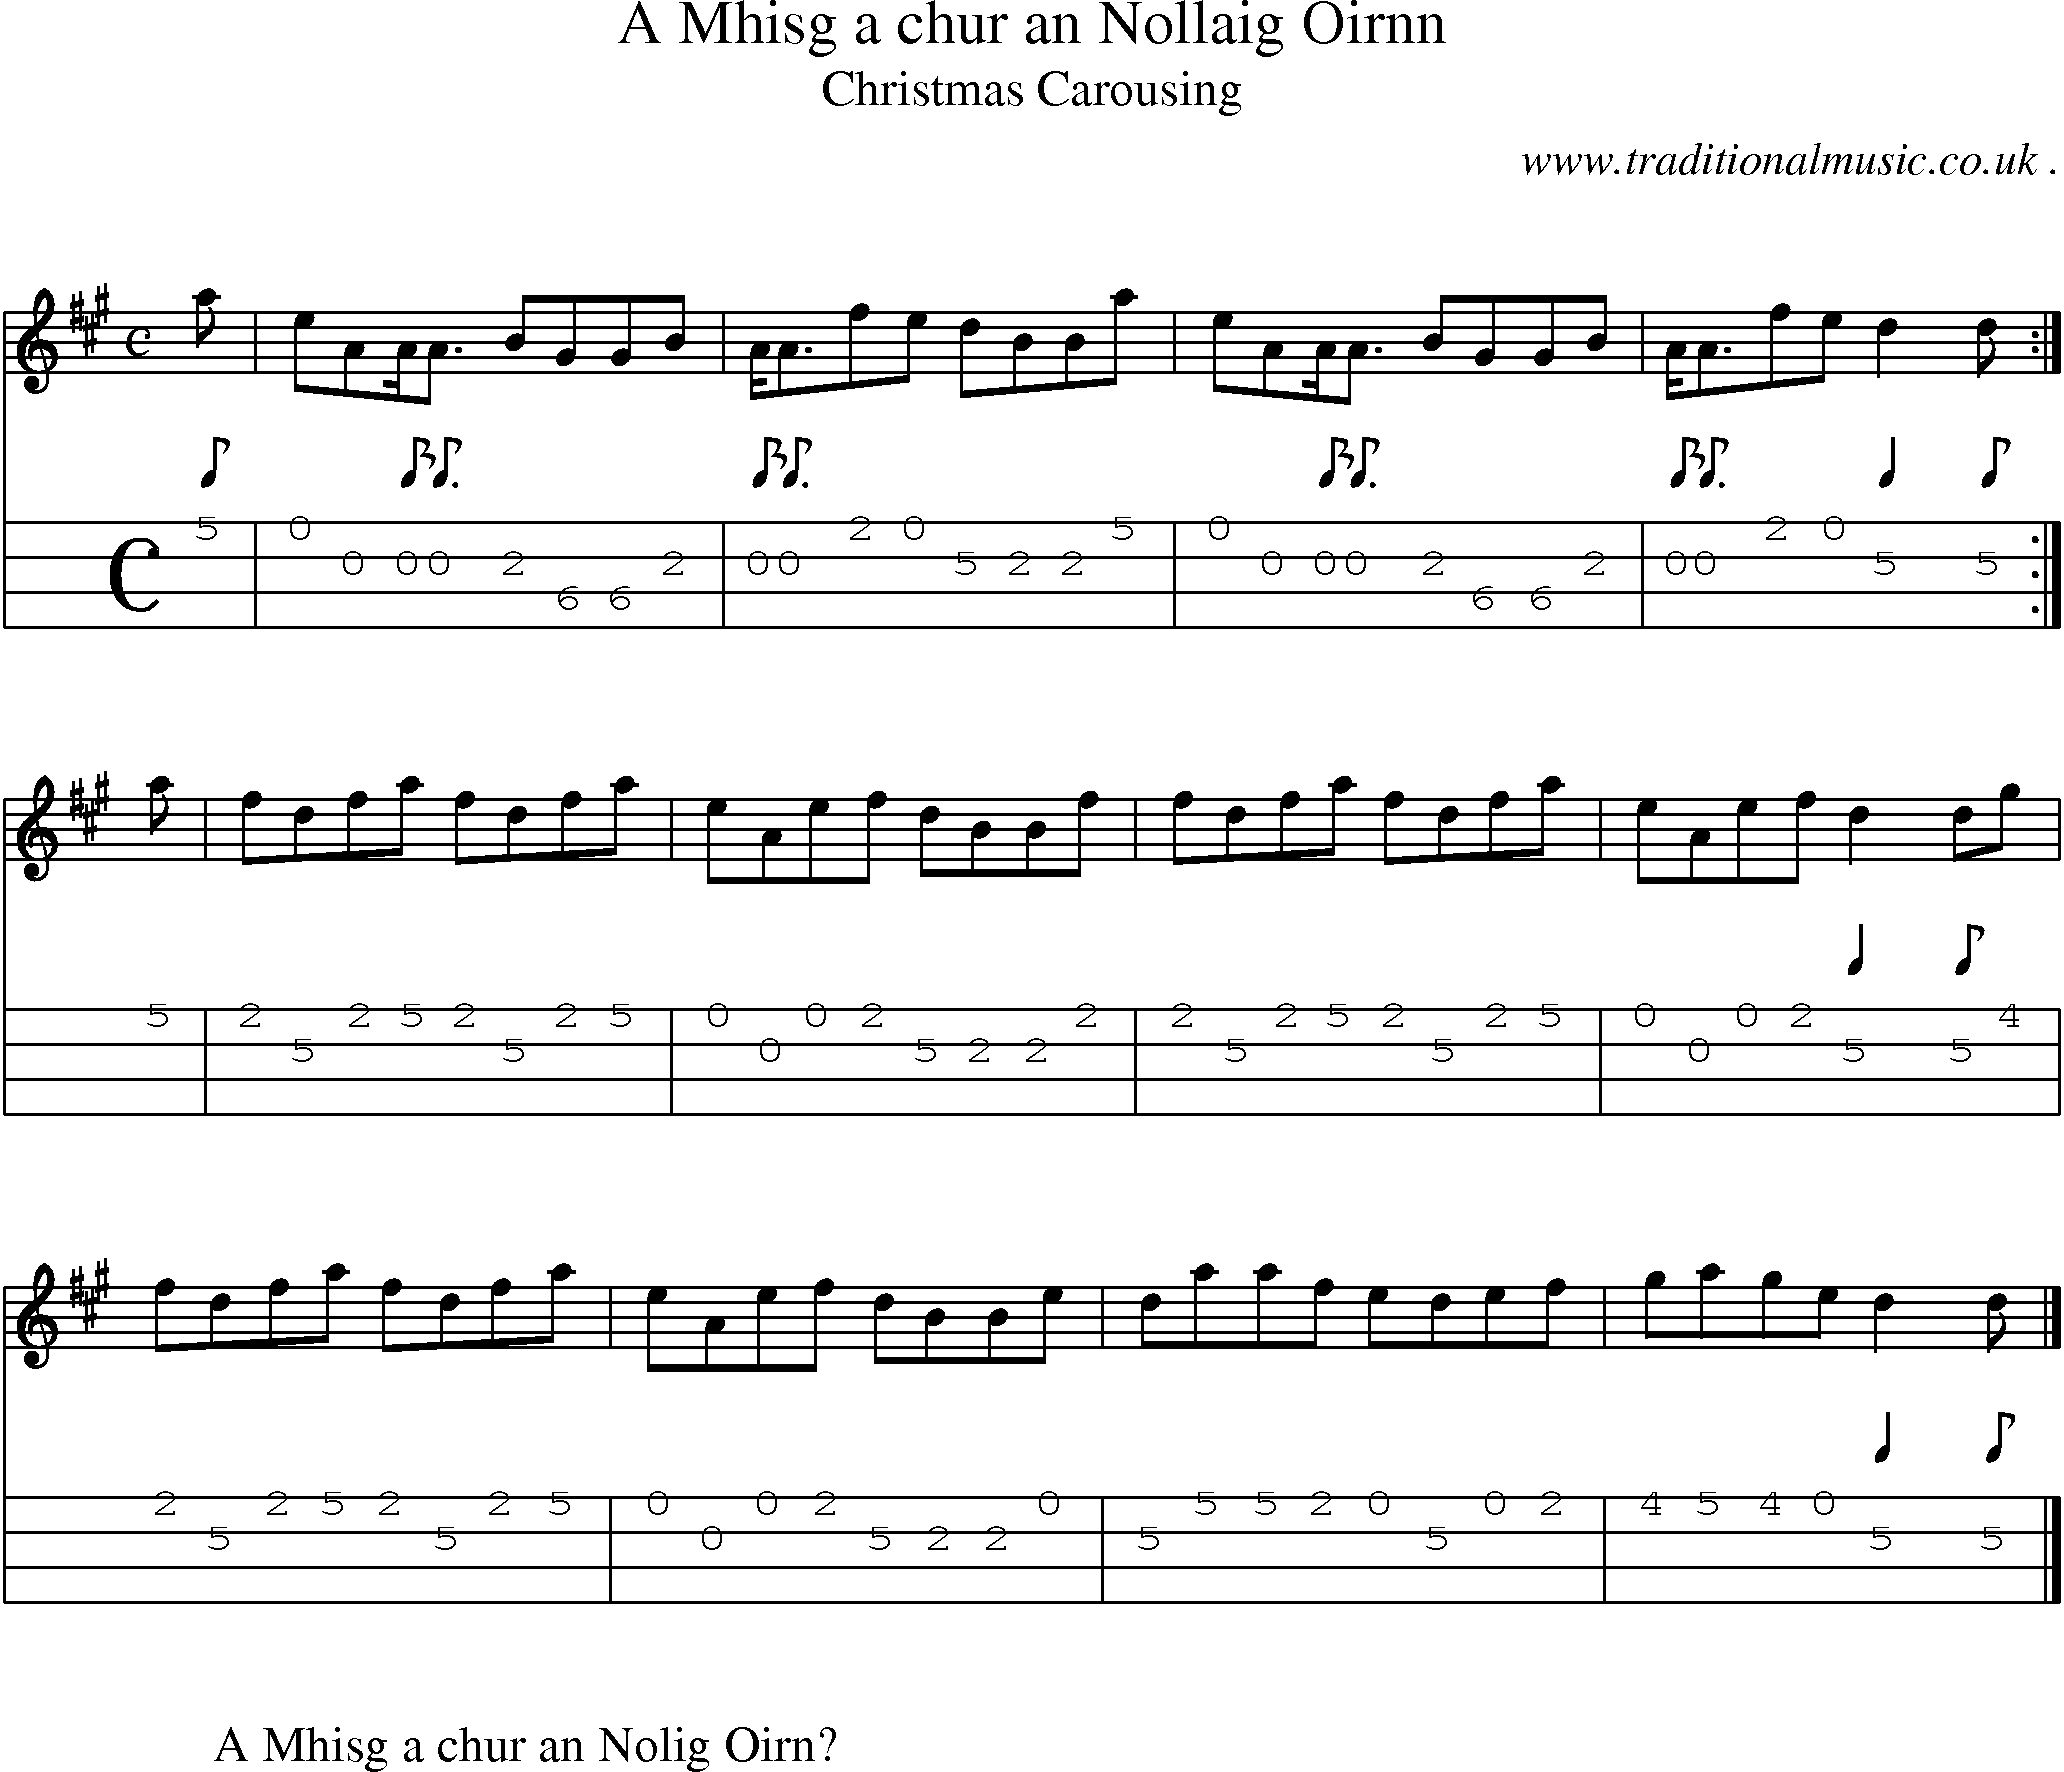 Sheet-music  score, Chords and Mandolin Tabs for A Mhisg A Chur An Nollaig Oirnn